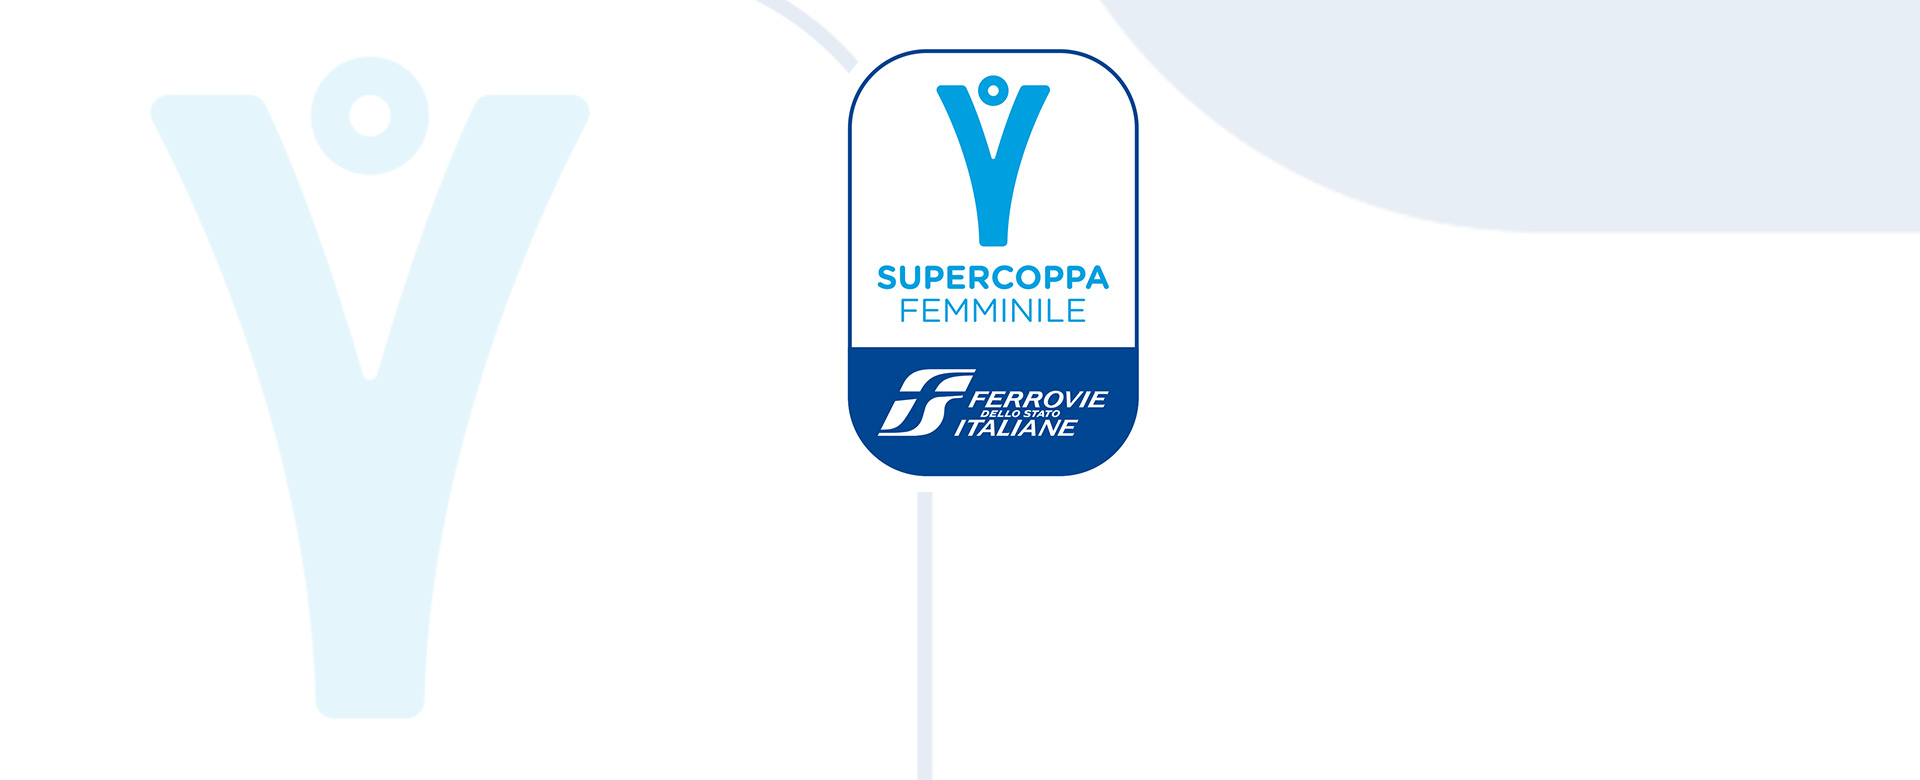 Logo della Supercoppa Femminile Ferrovie dello Stato Italiane 2022